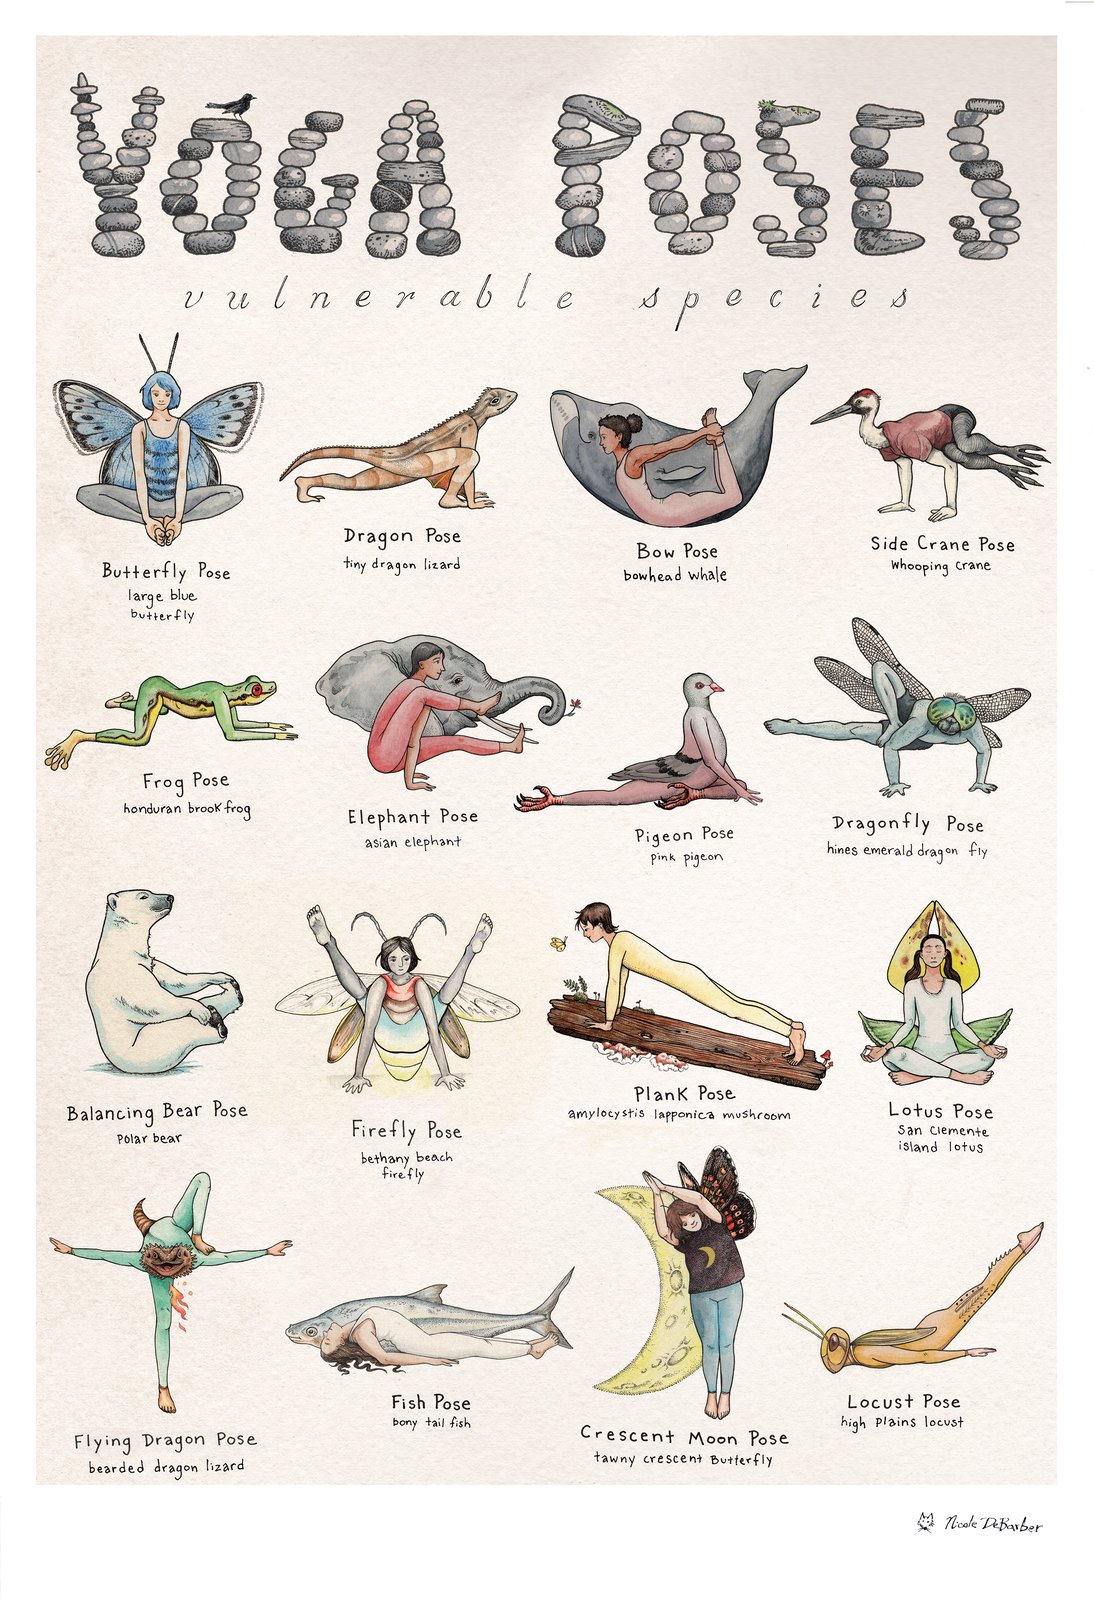 IYMS Rishikesh - Yoga Poses with Animal Names: -- Butterfly Pose -  Badhakonasana -- Dog Pose - Adho Mukha Svanasana -- Cobrapose -  Bhujangasana -- Camel Pose - Ustrasana -- Swan Pose -